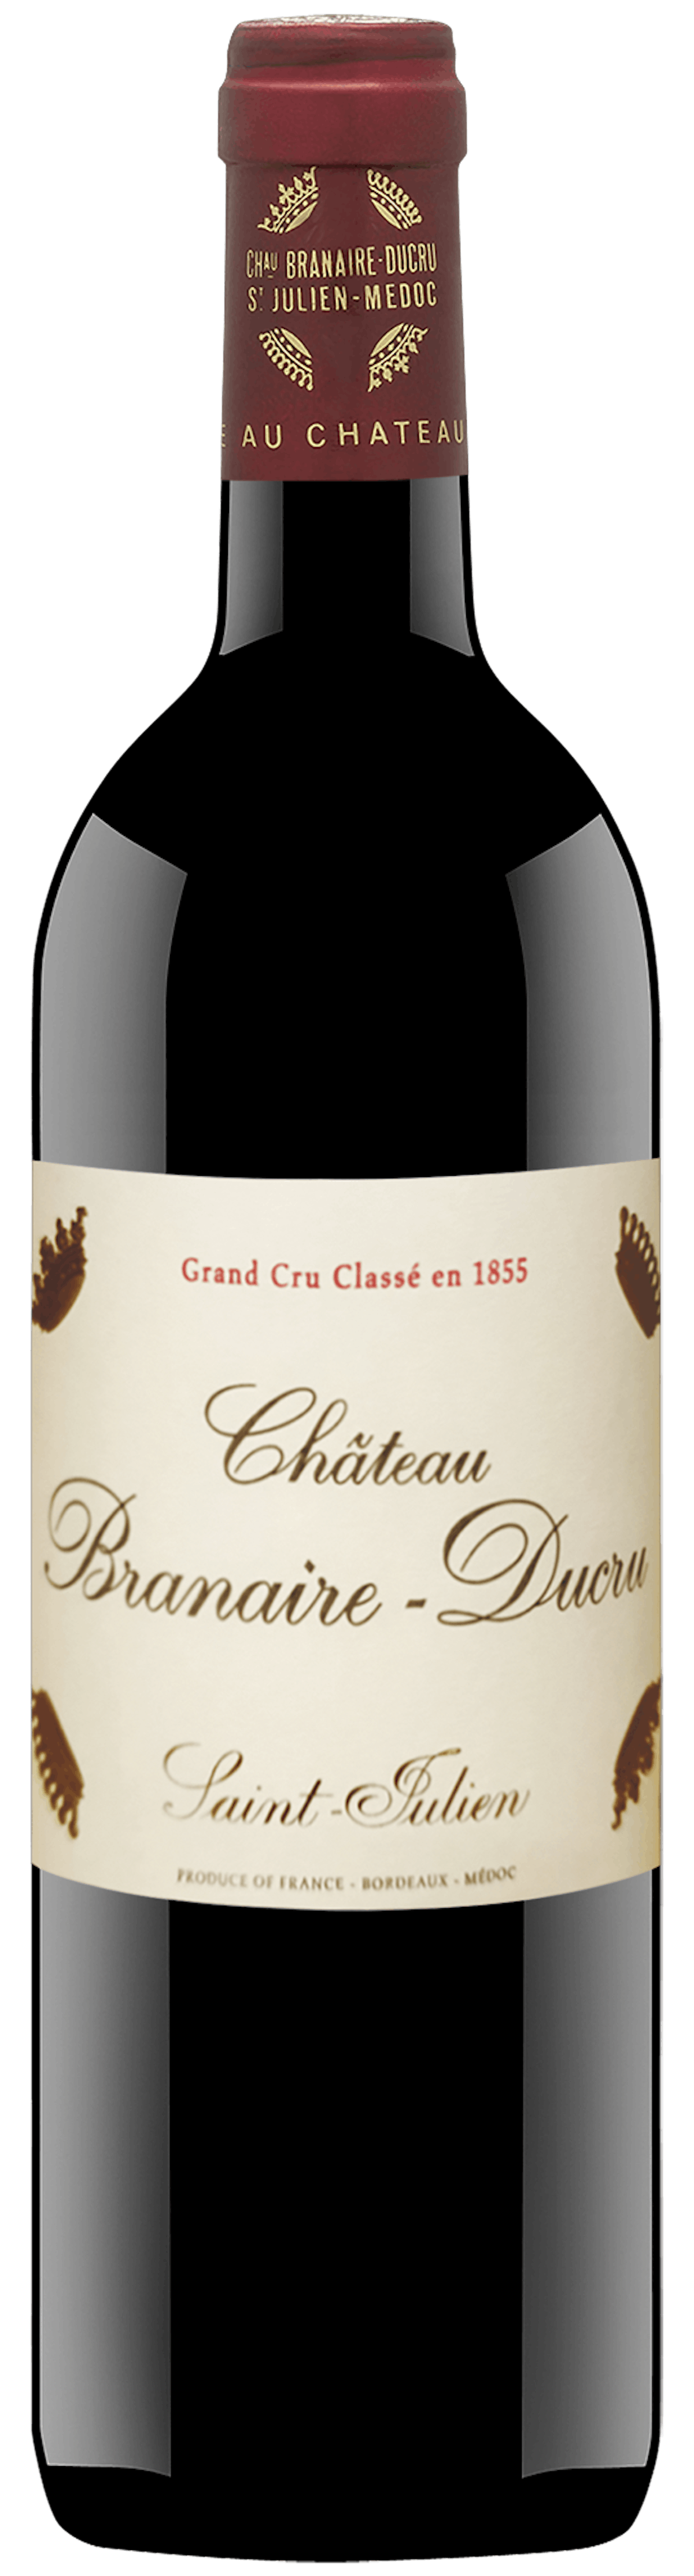 Château Branaire-Ducru 4e Grand Cru Classé